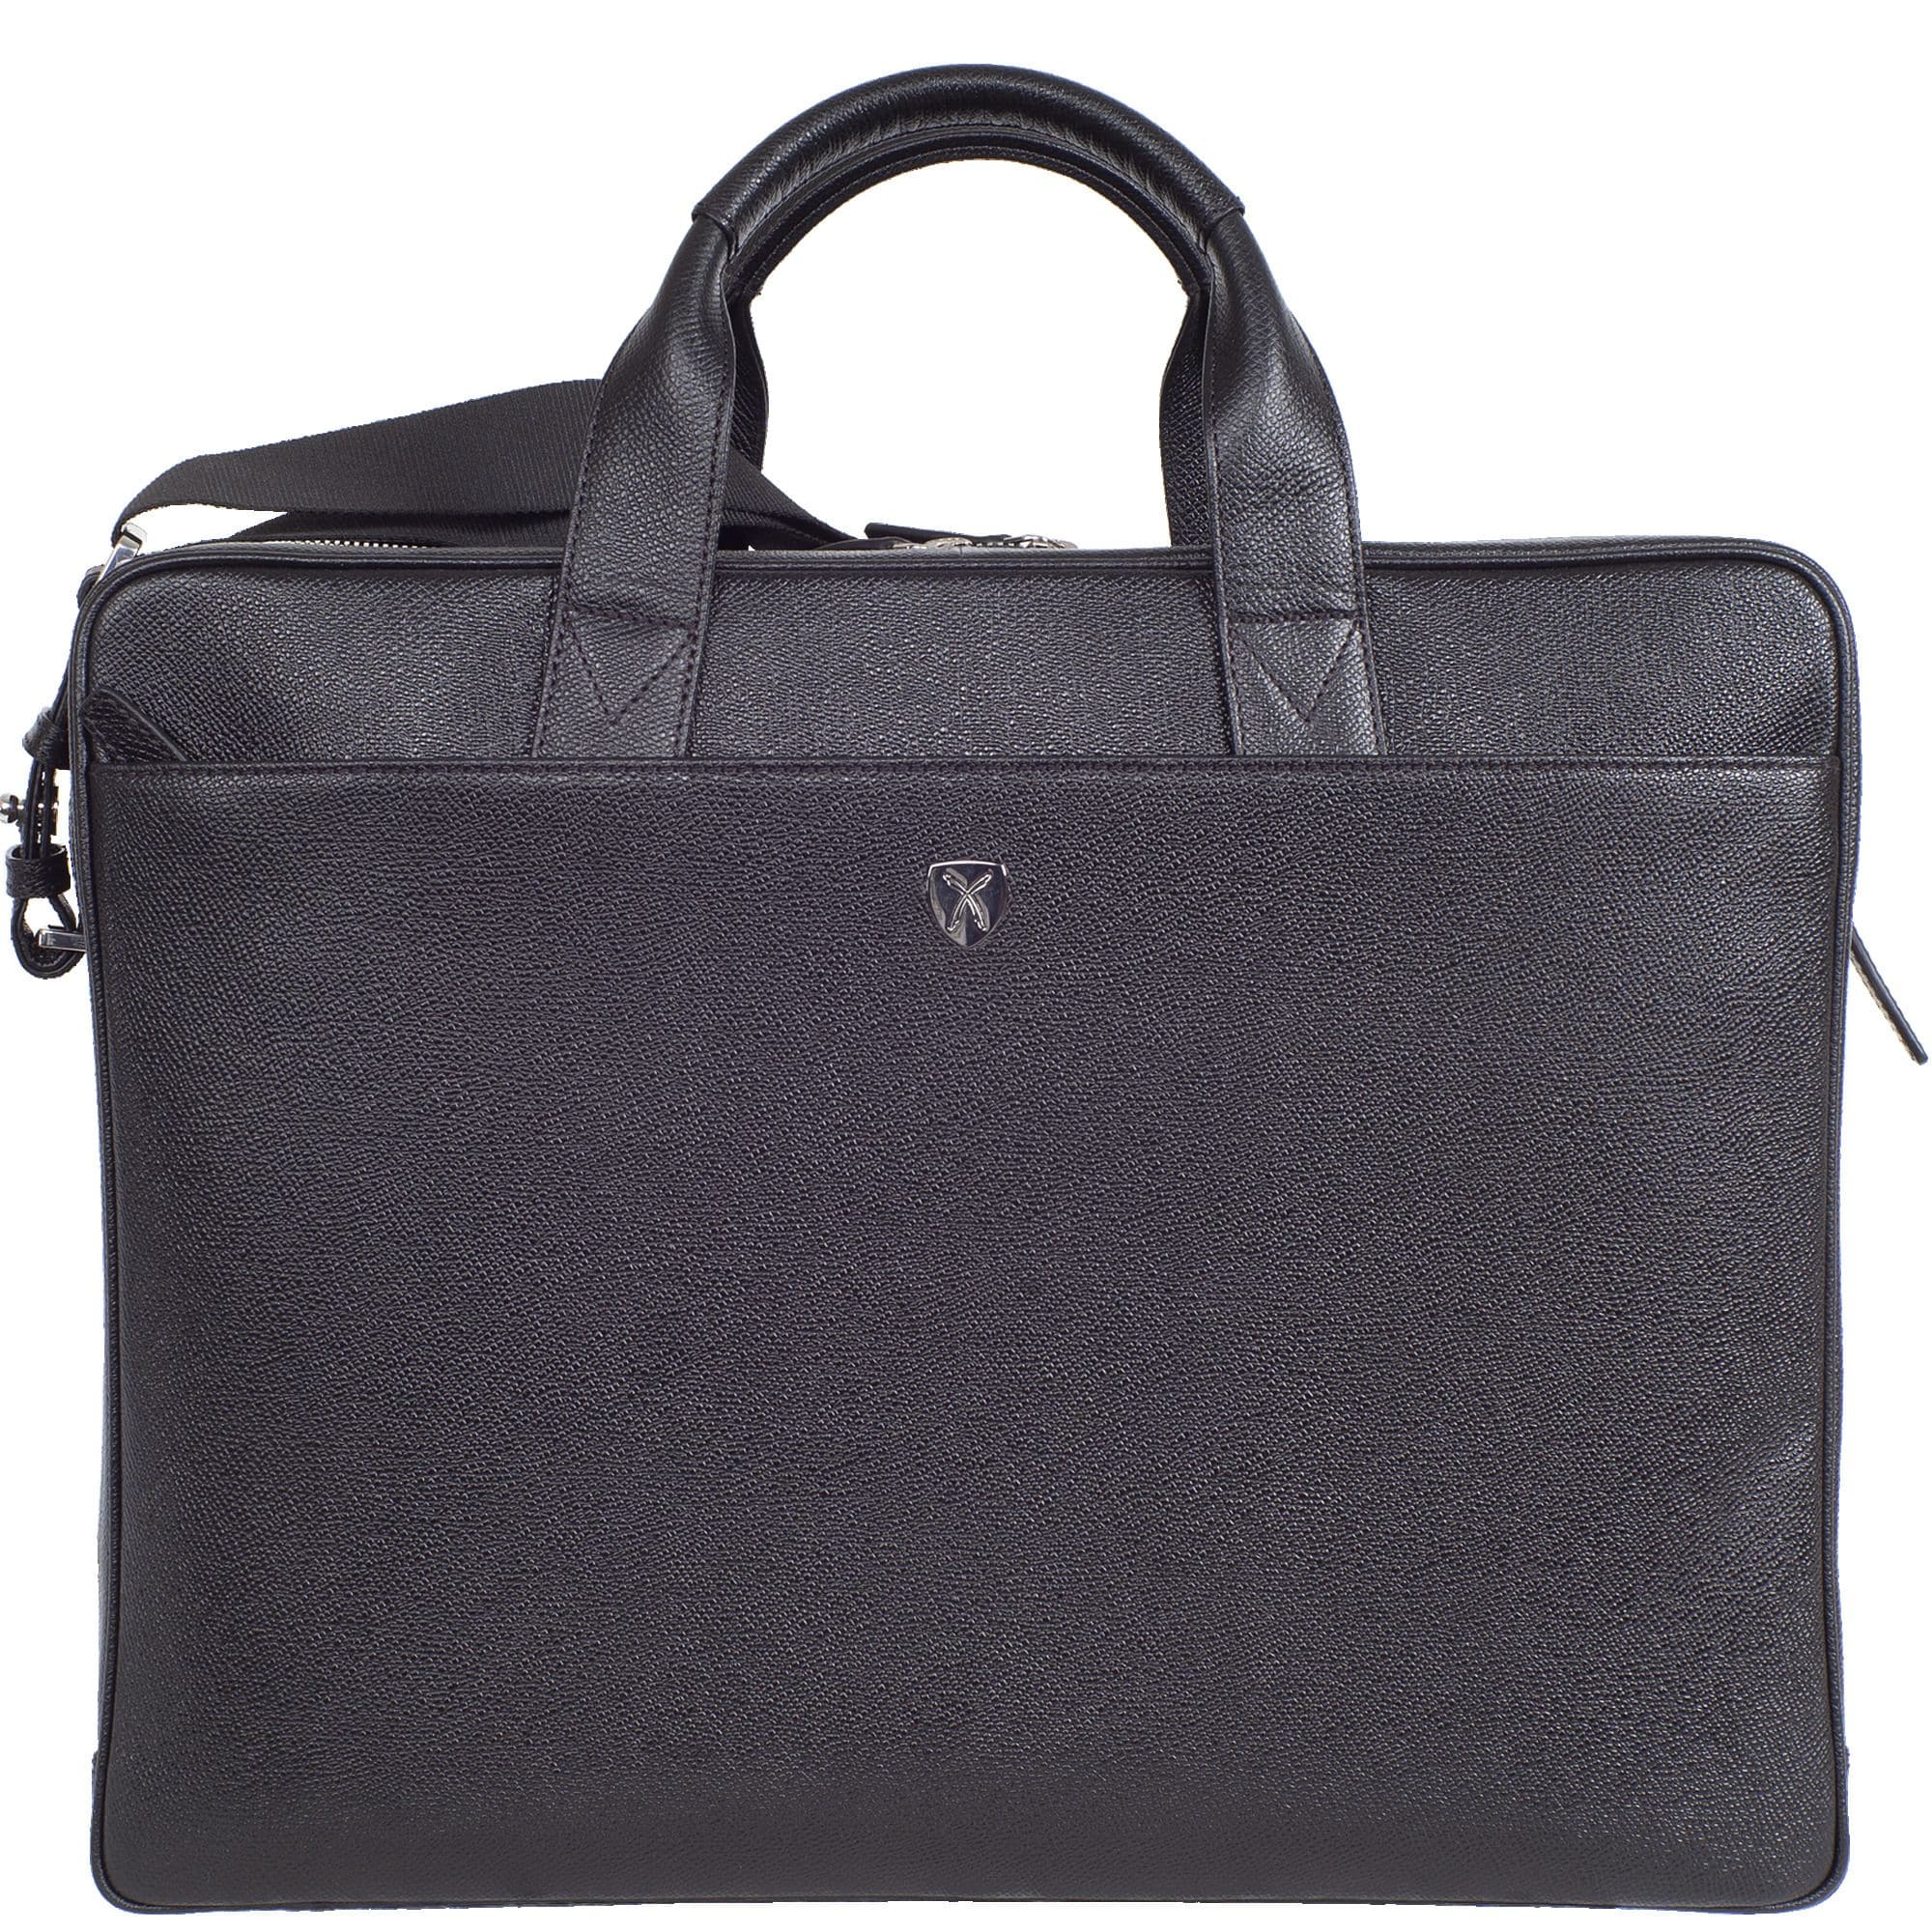 Businesstasche Laptoptasche 15 Zoll geprägtes Leder schwarz 2 große Fächer